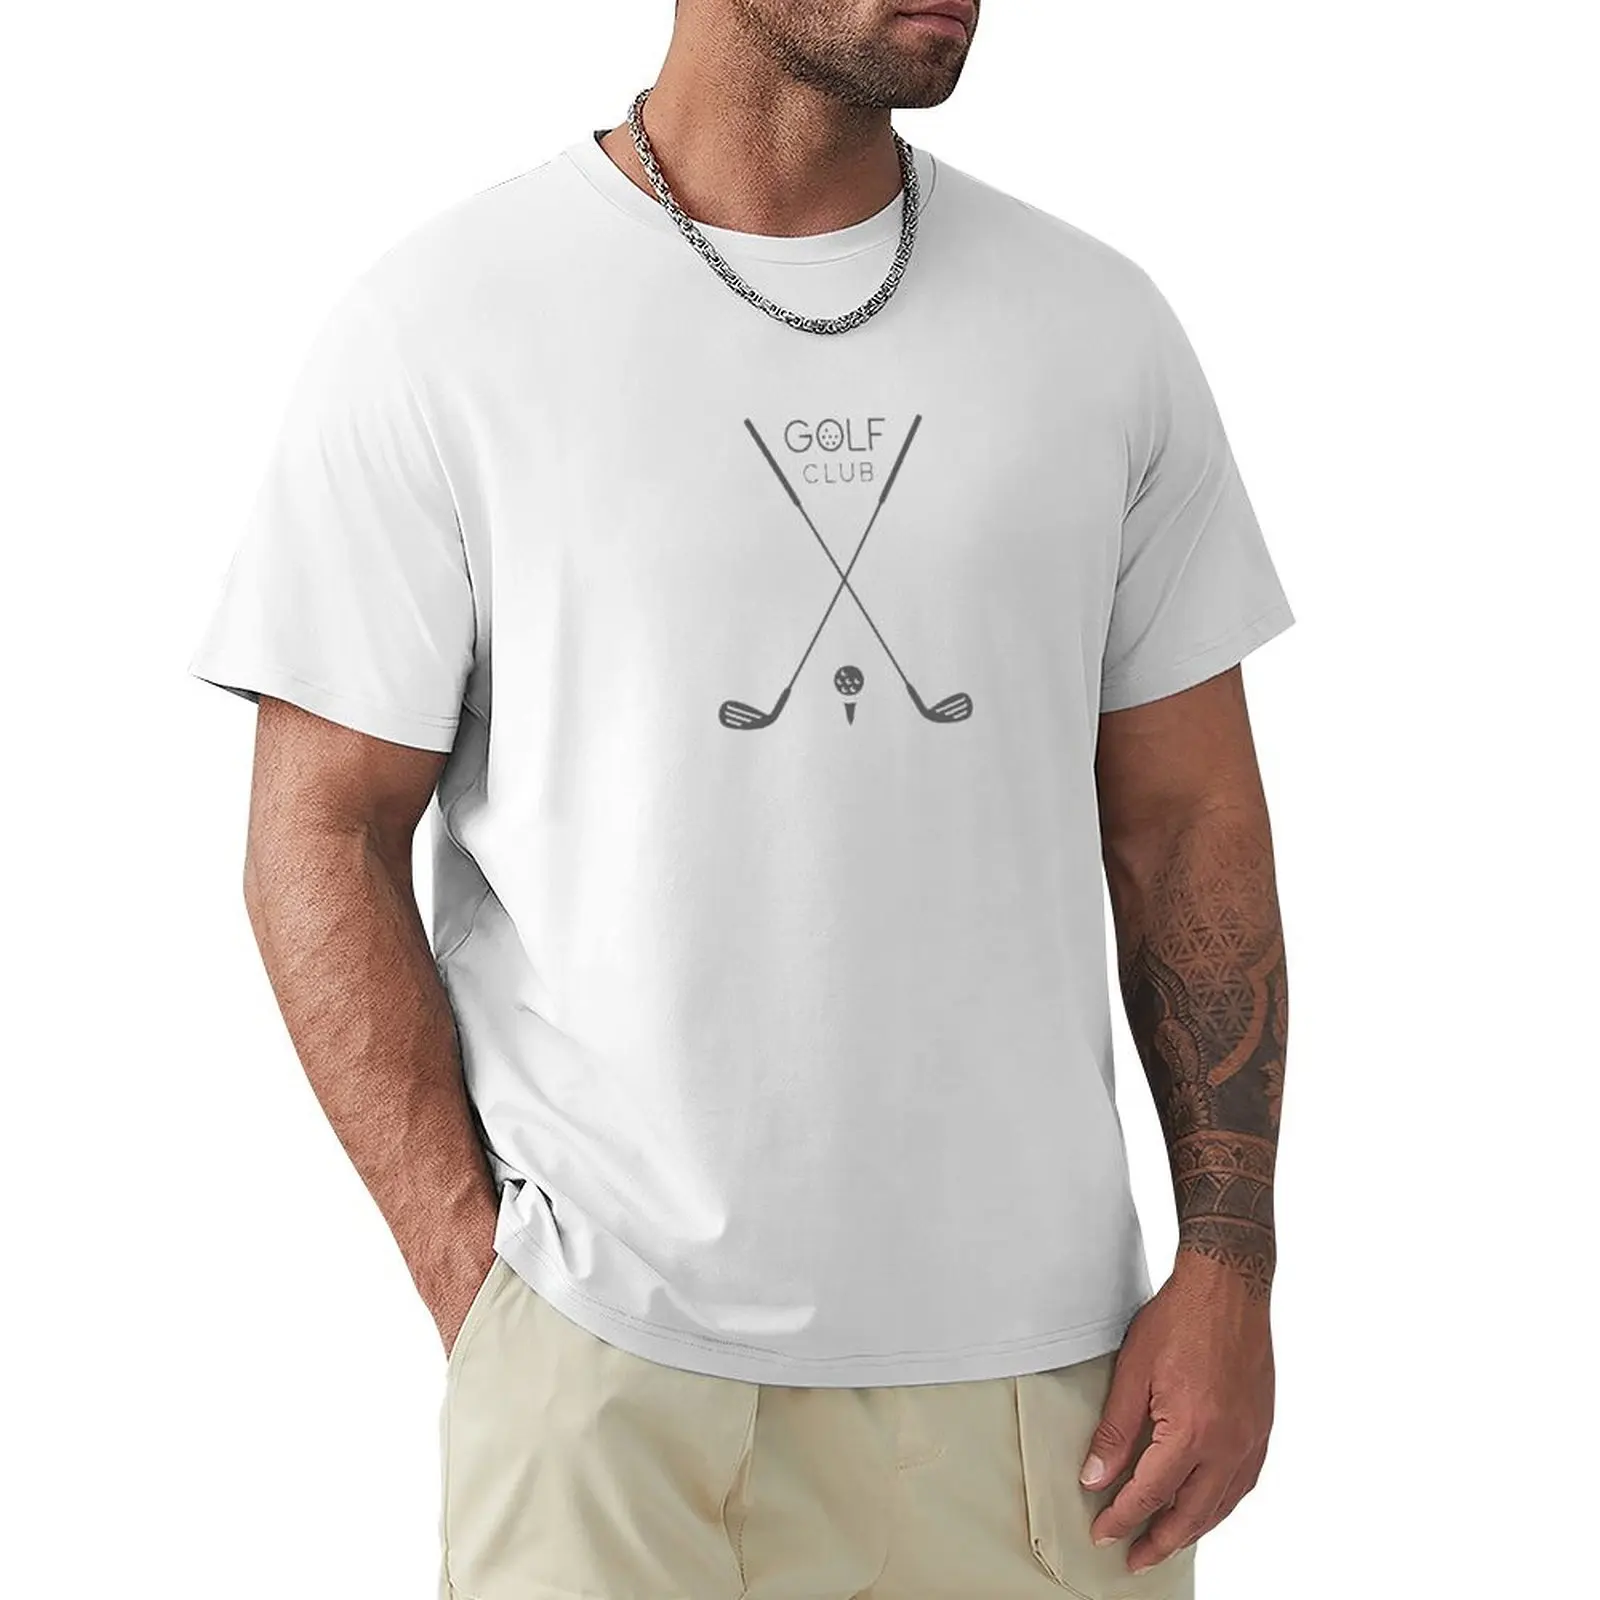 

Golf lovers club T-shirt sublime plus size tops sports fans men t shirt